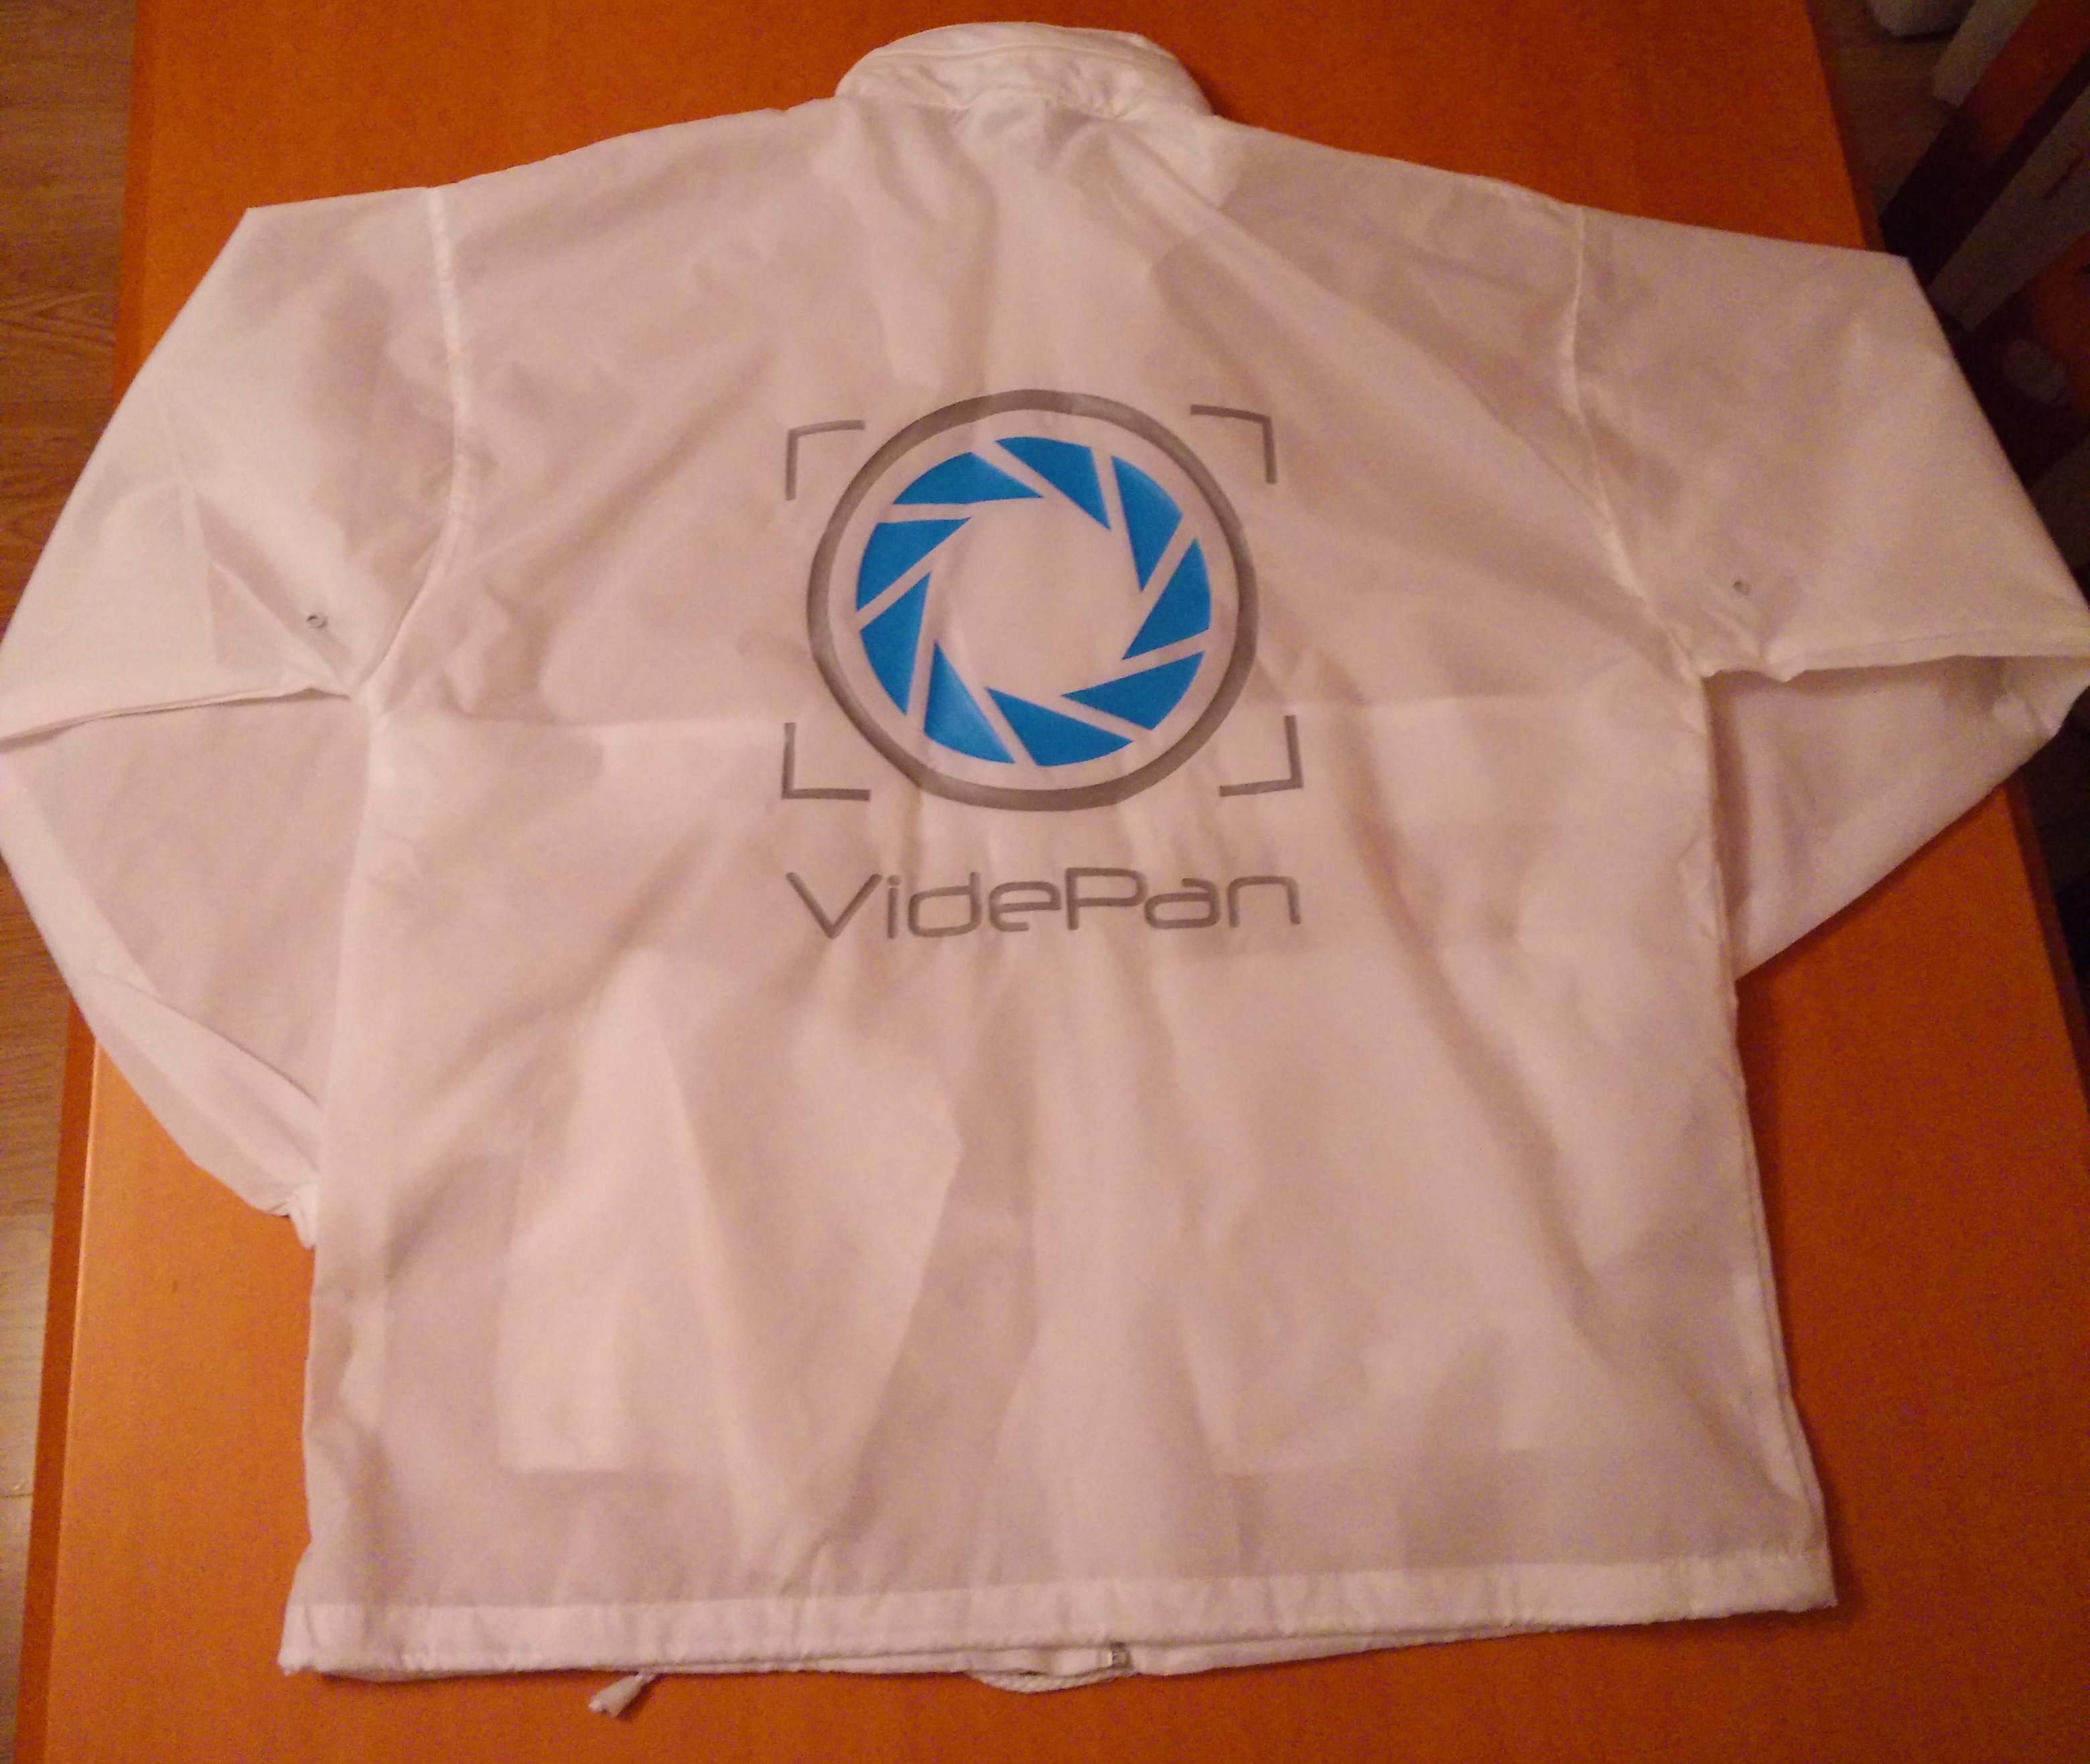 #VidePan ya está preparada para el invierno